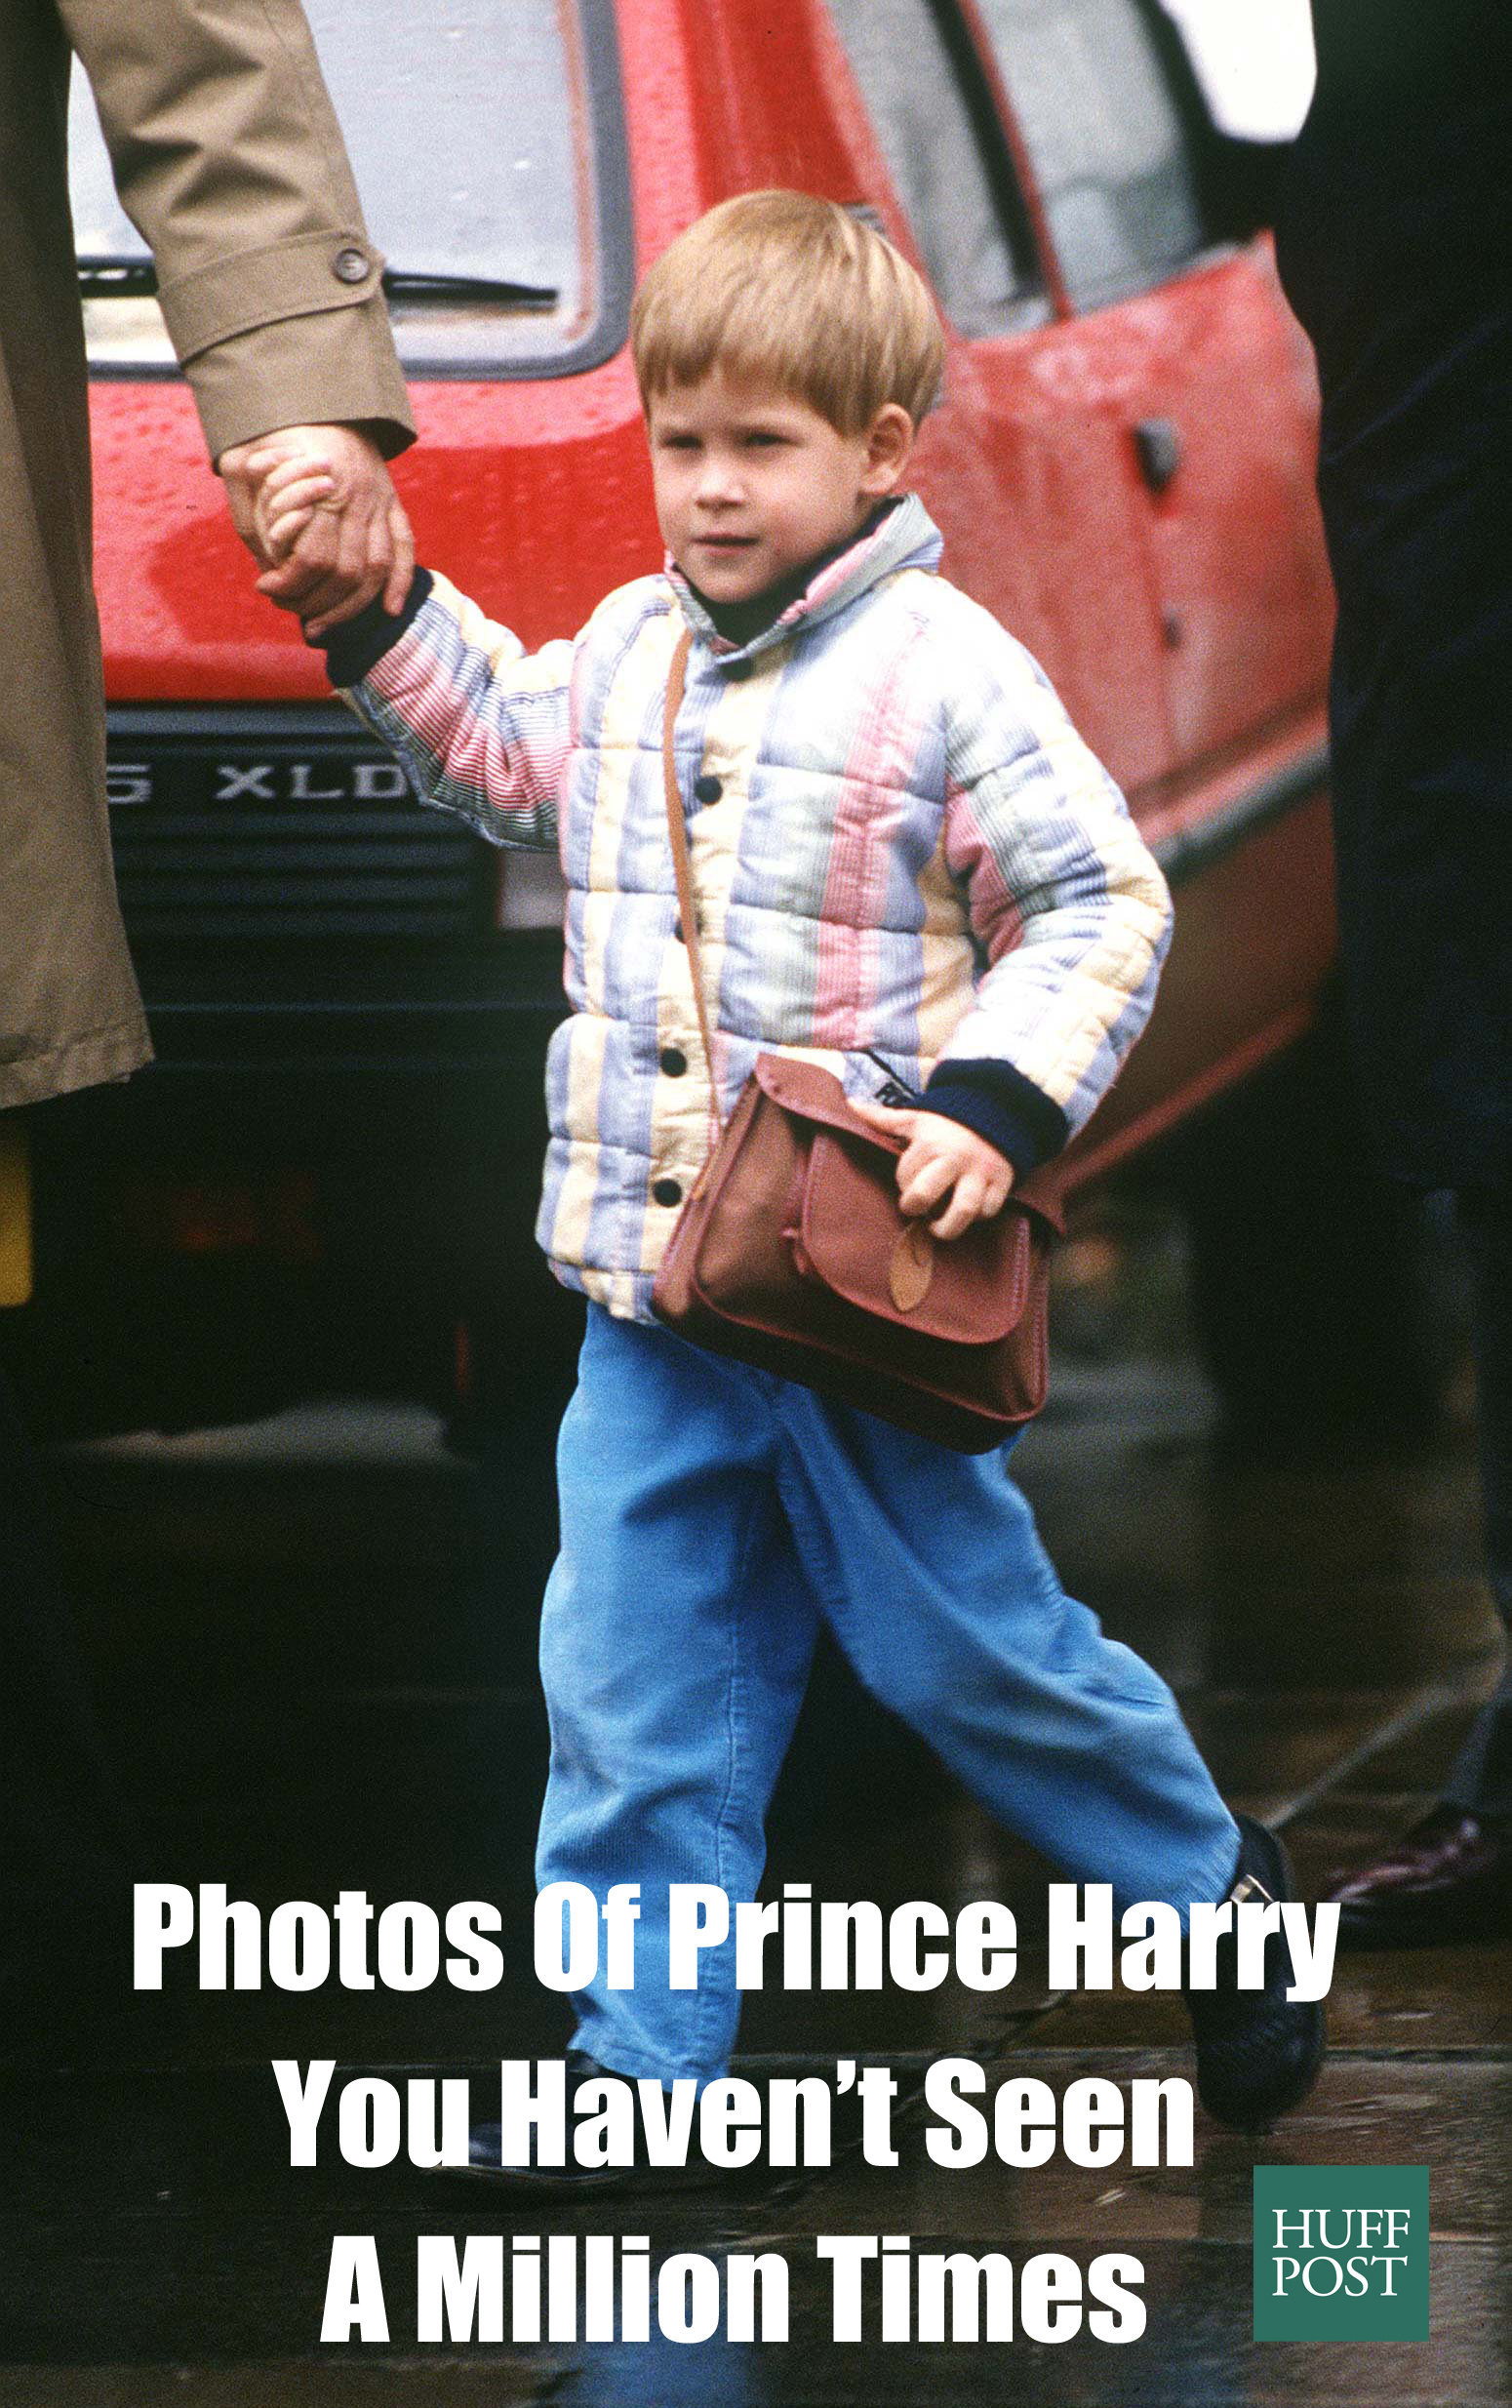 From Prince Harry to Meme King: Internet goes berserk over Duke of Sussex's  tell-all memoir 'Spare' - BusinessToday